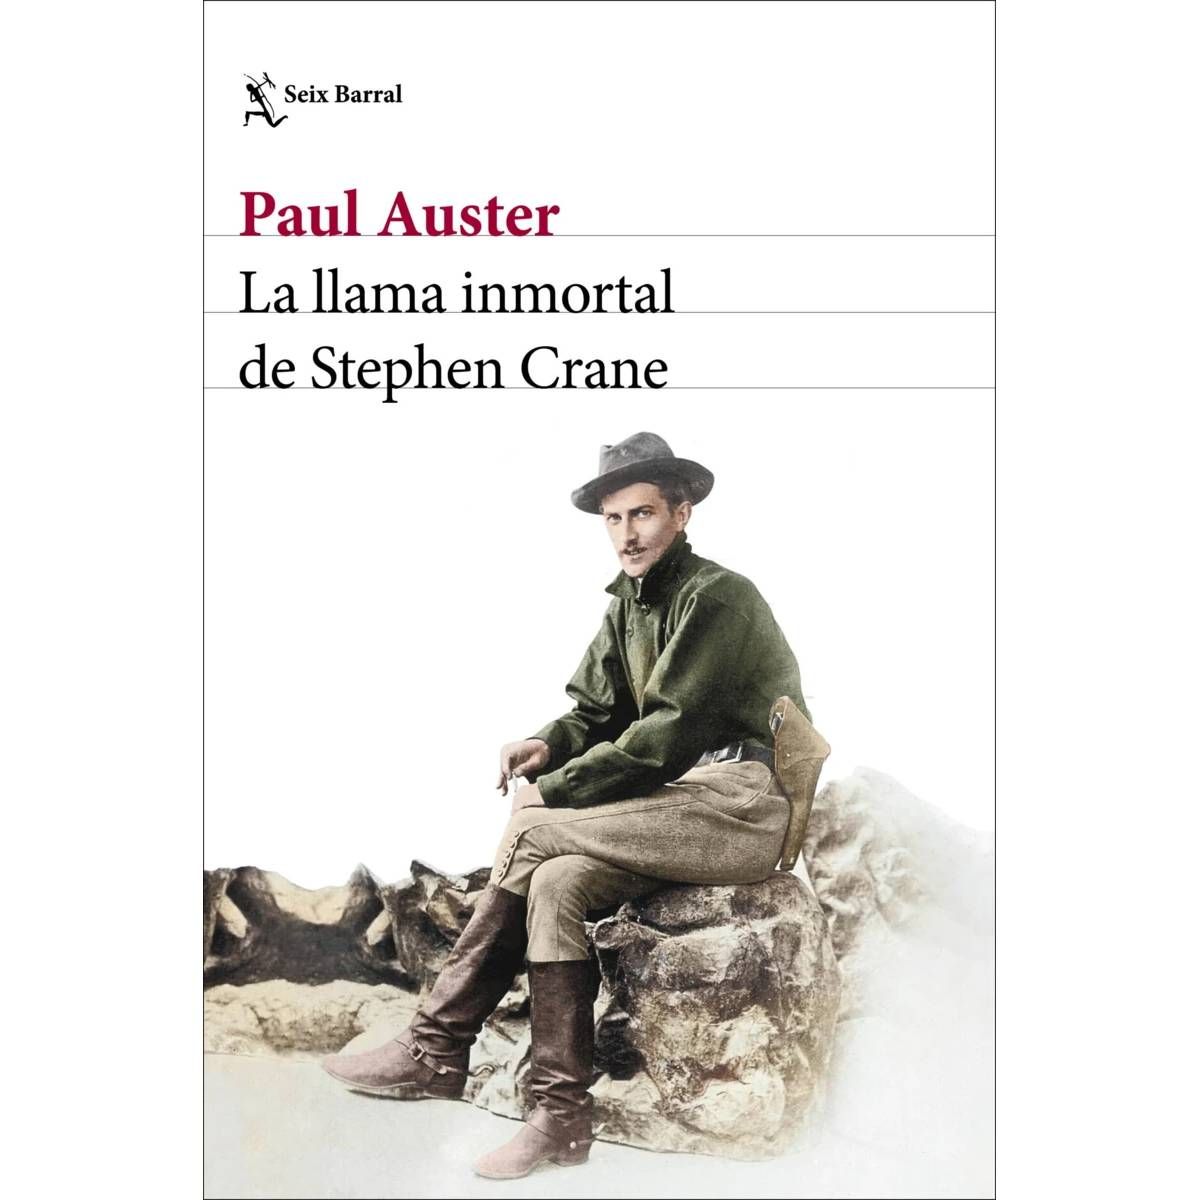 ‘La llama inmortal de Stephen Crane’, de Paul Auster